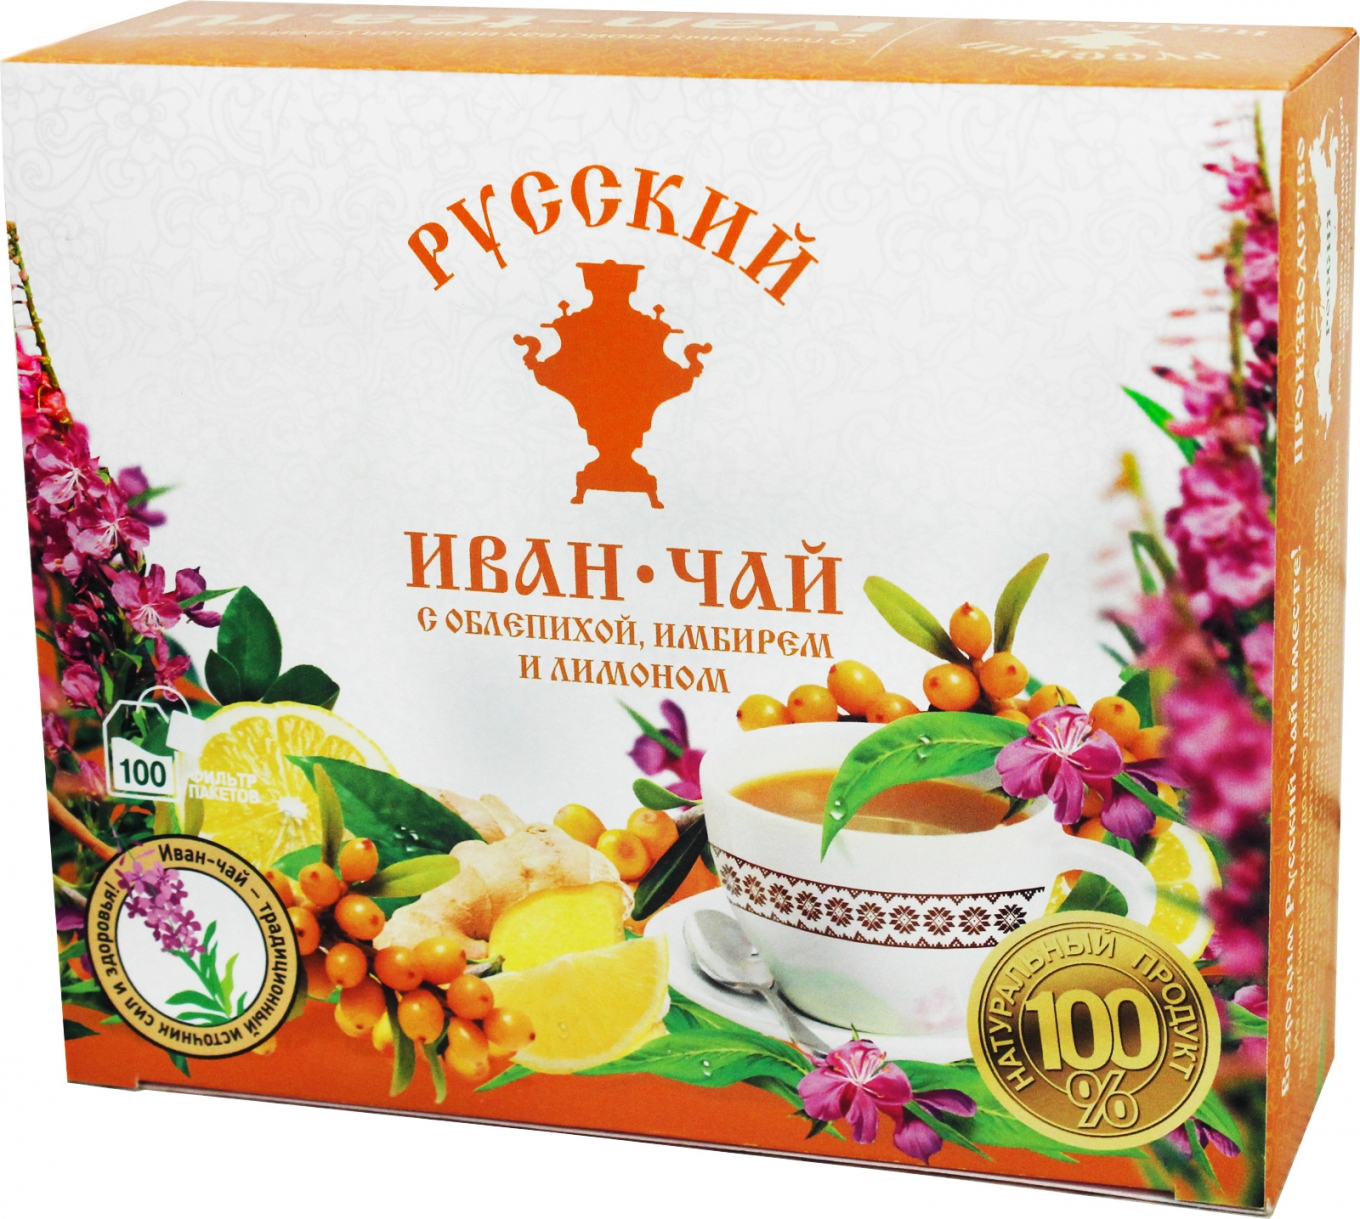 Русский Иван-чай с Облепихой, Имбирем и Лимоном, 100 чайных пакетиков с ярлычком, 150 г/ 0.33 lb